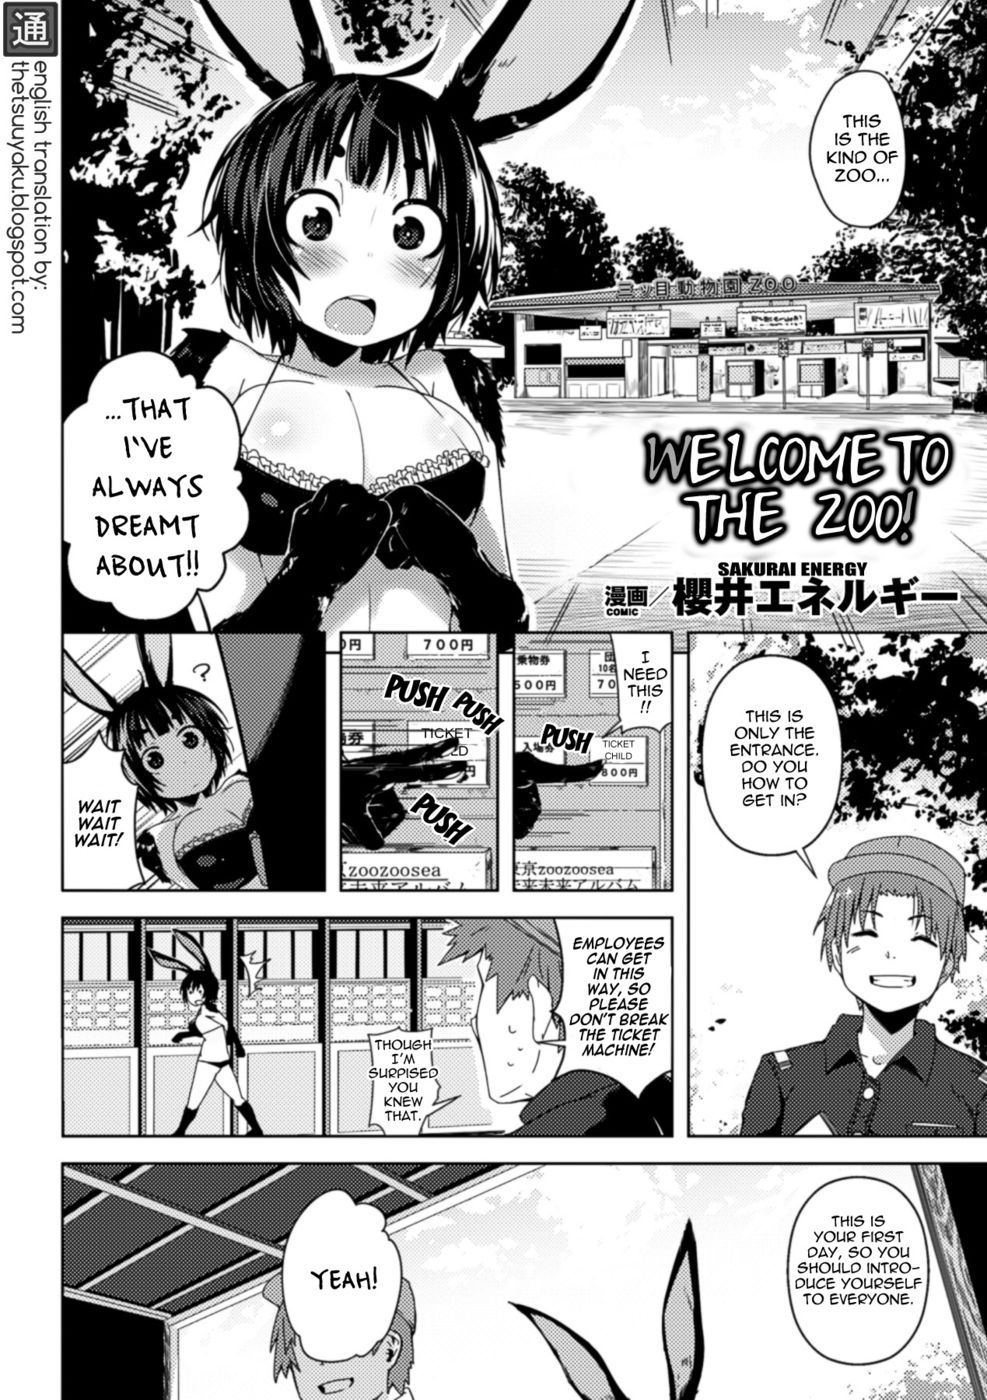 Hentai Manga Comic-Welcome to the Zoo!-Read-2